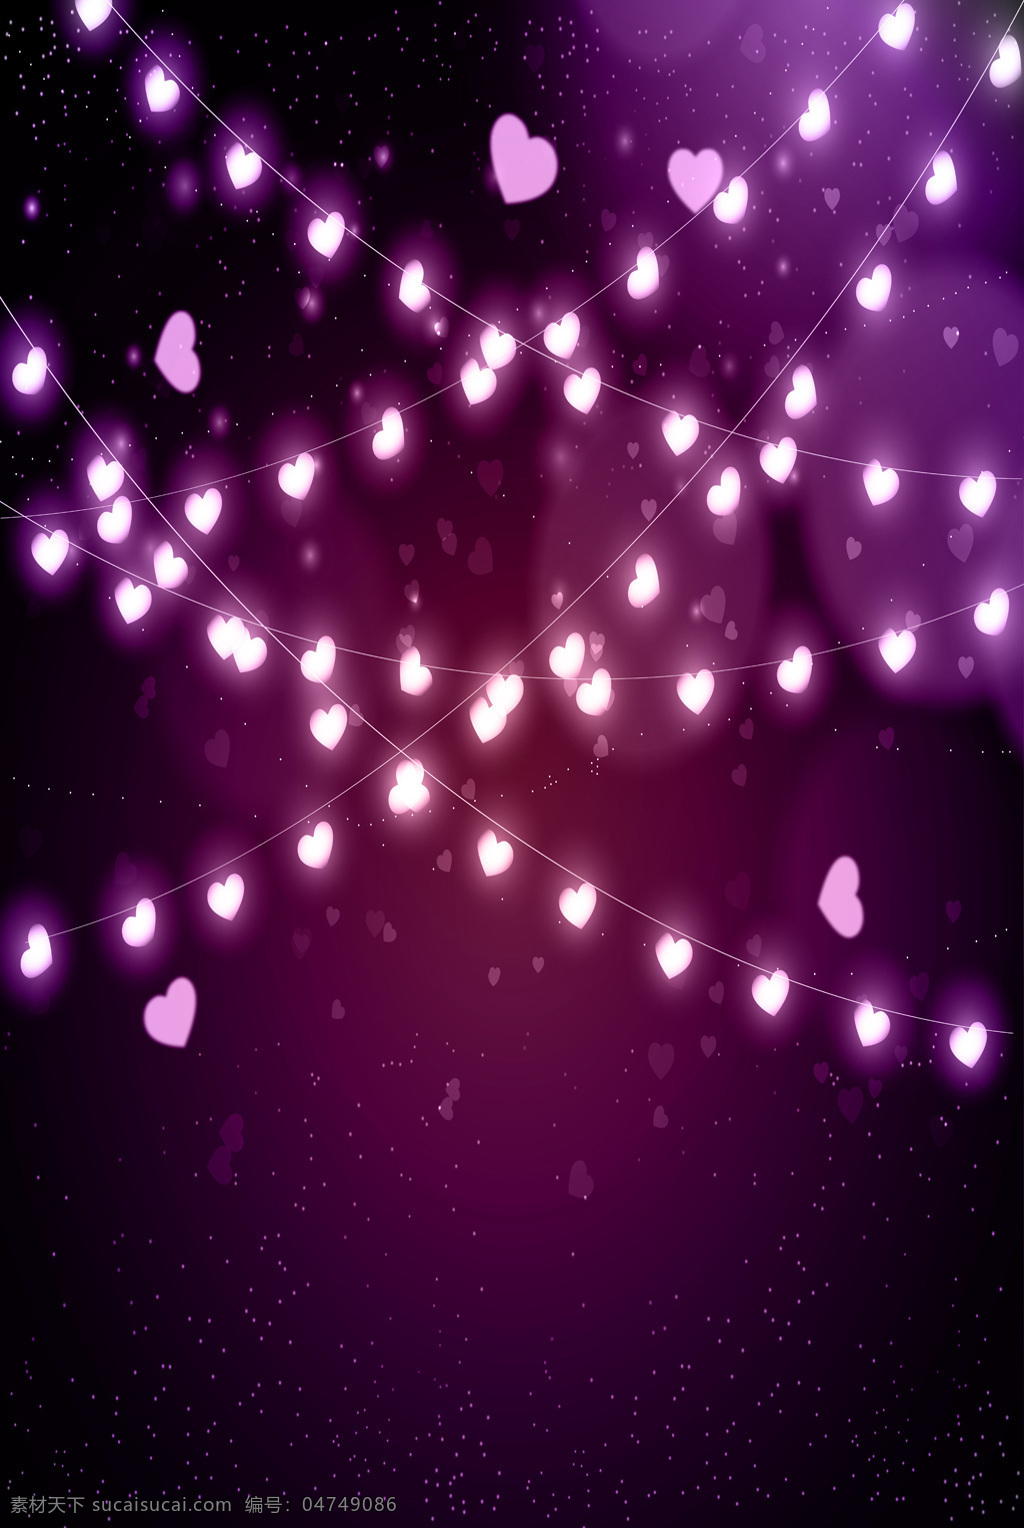 紫色 led 灯 背景 璀璨 灯光 炫彩 促销 爱心 矢量 灯火 节庆 浪漫